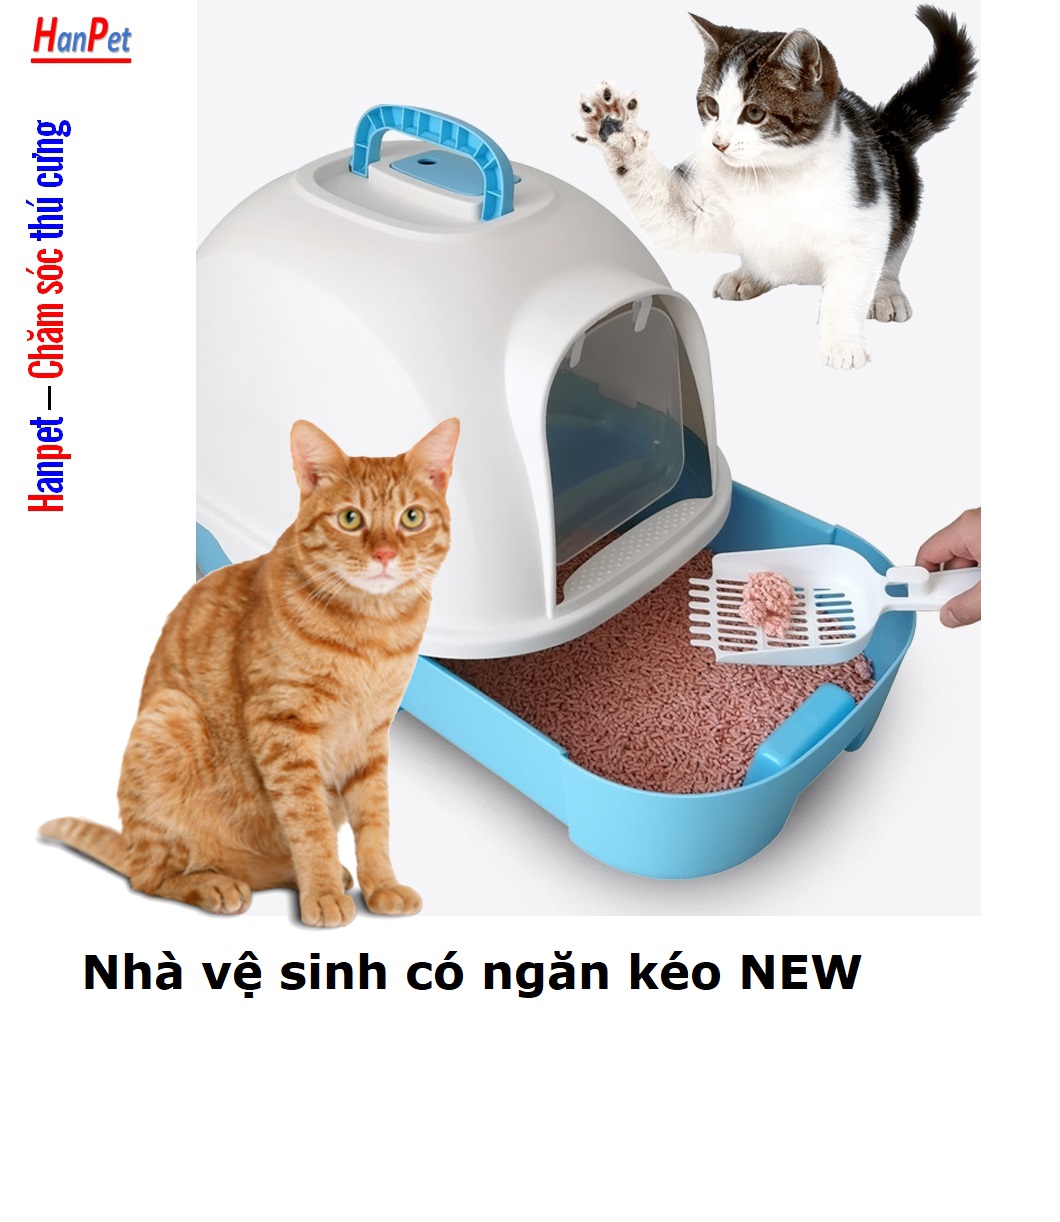 Hanpet - Nhà vệ sinh cho mèo có khay cát dạng ngăn kéo new KT 49x36 cao